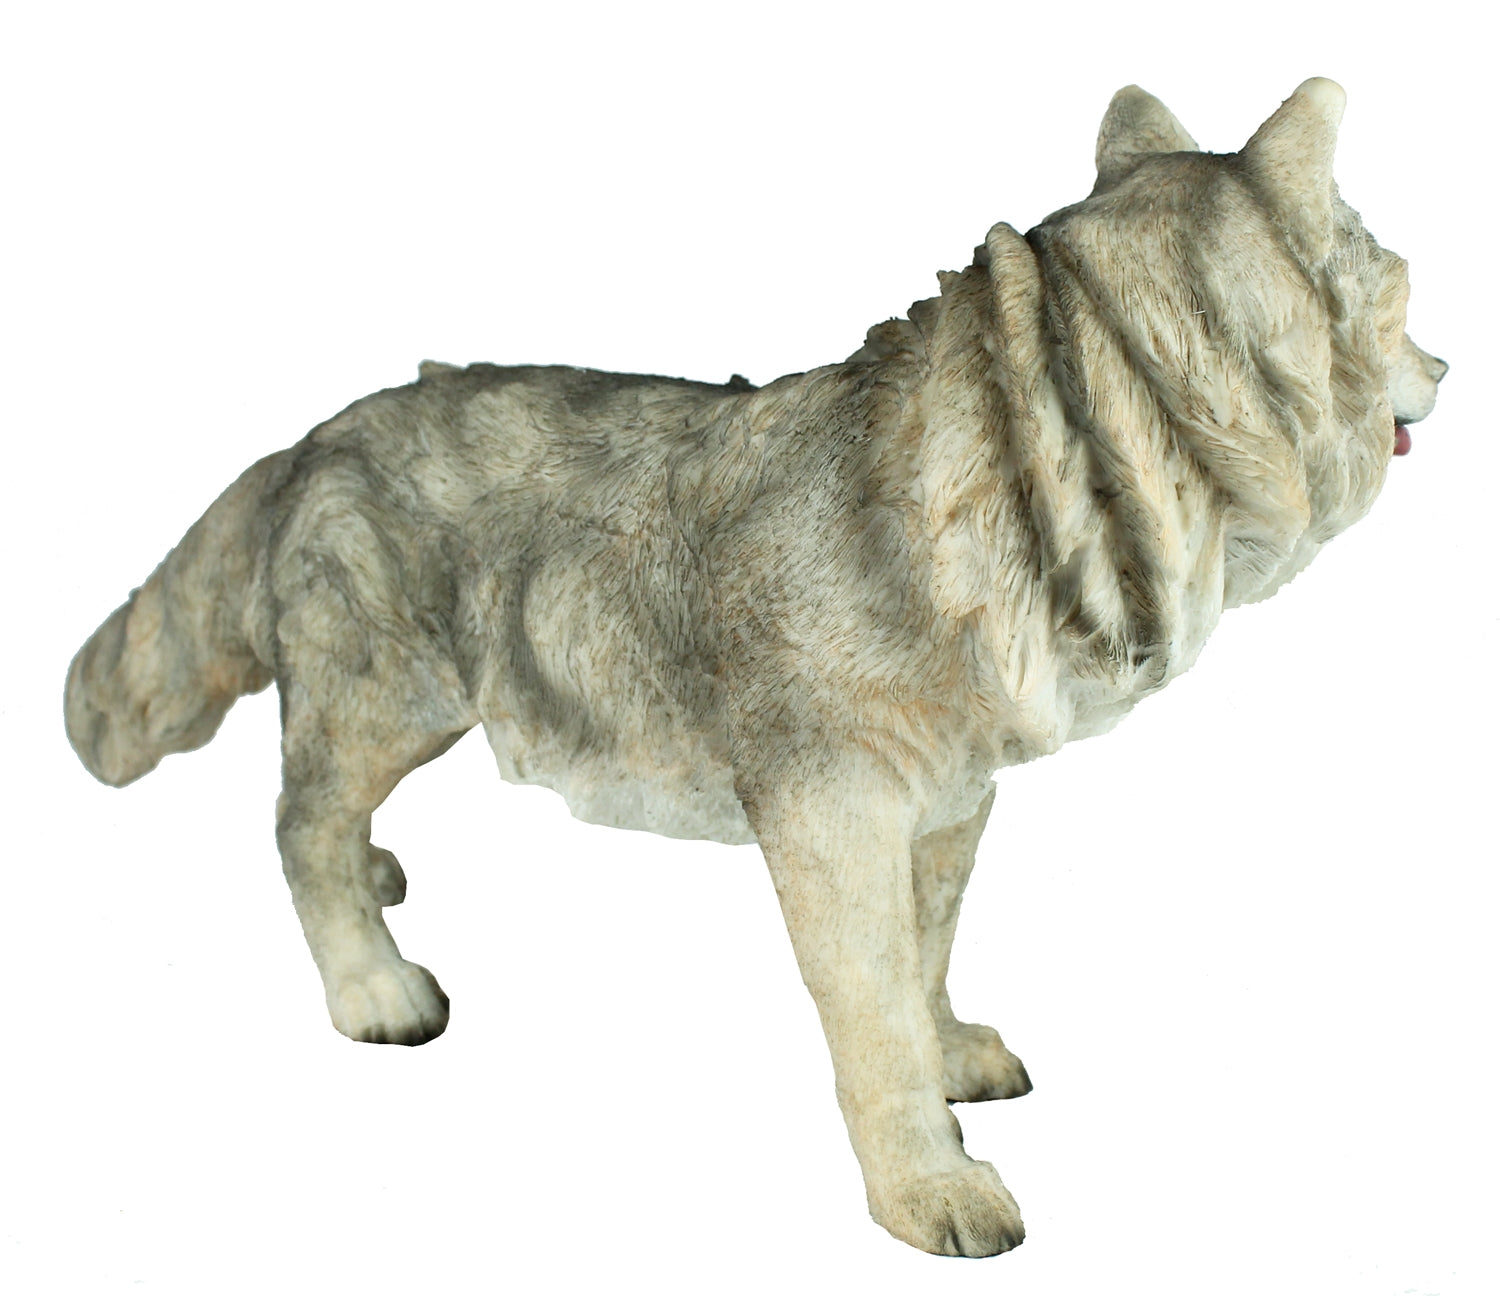 Wolf Tierfigur Wolf-Figur 36 cm Wolf-Deko Wolfswelpe Gartendeko Dekofigur